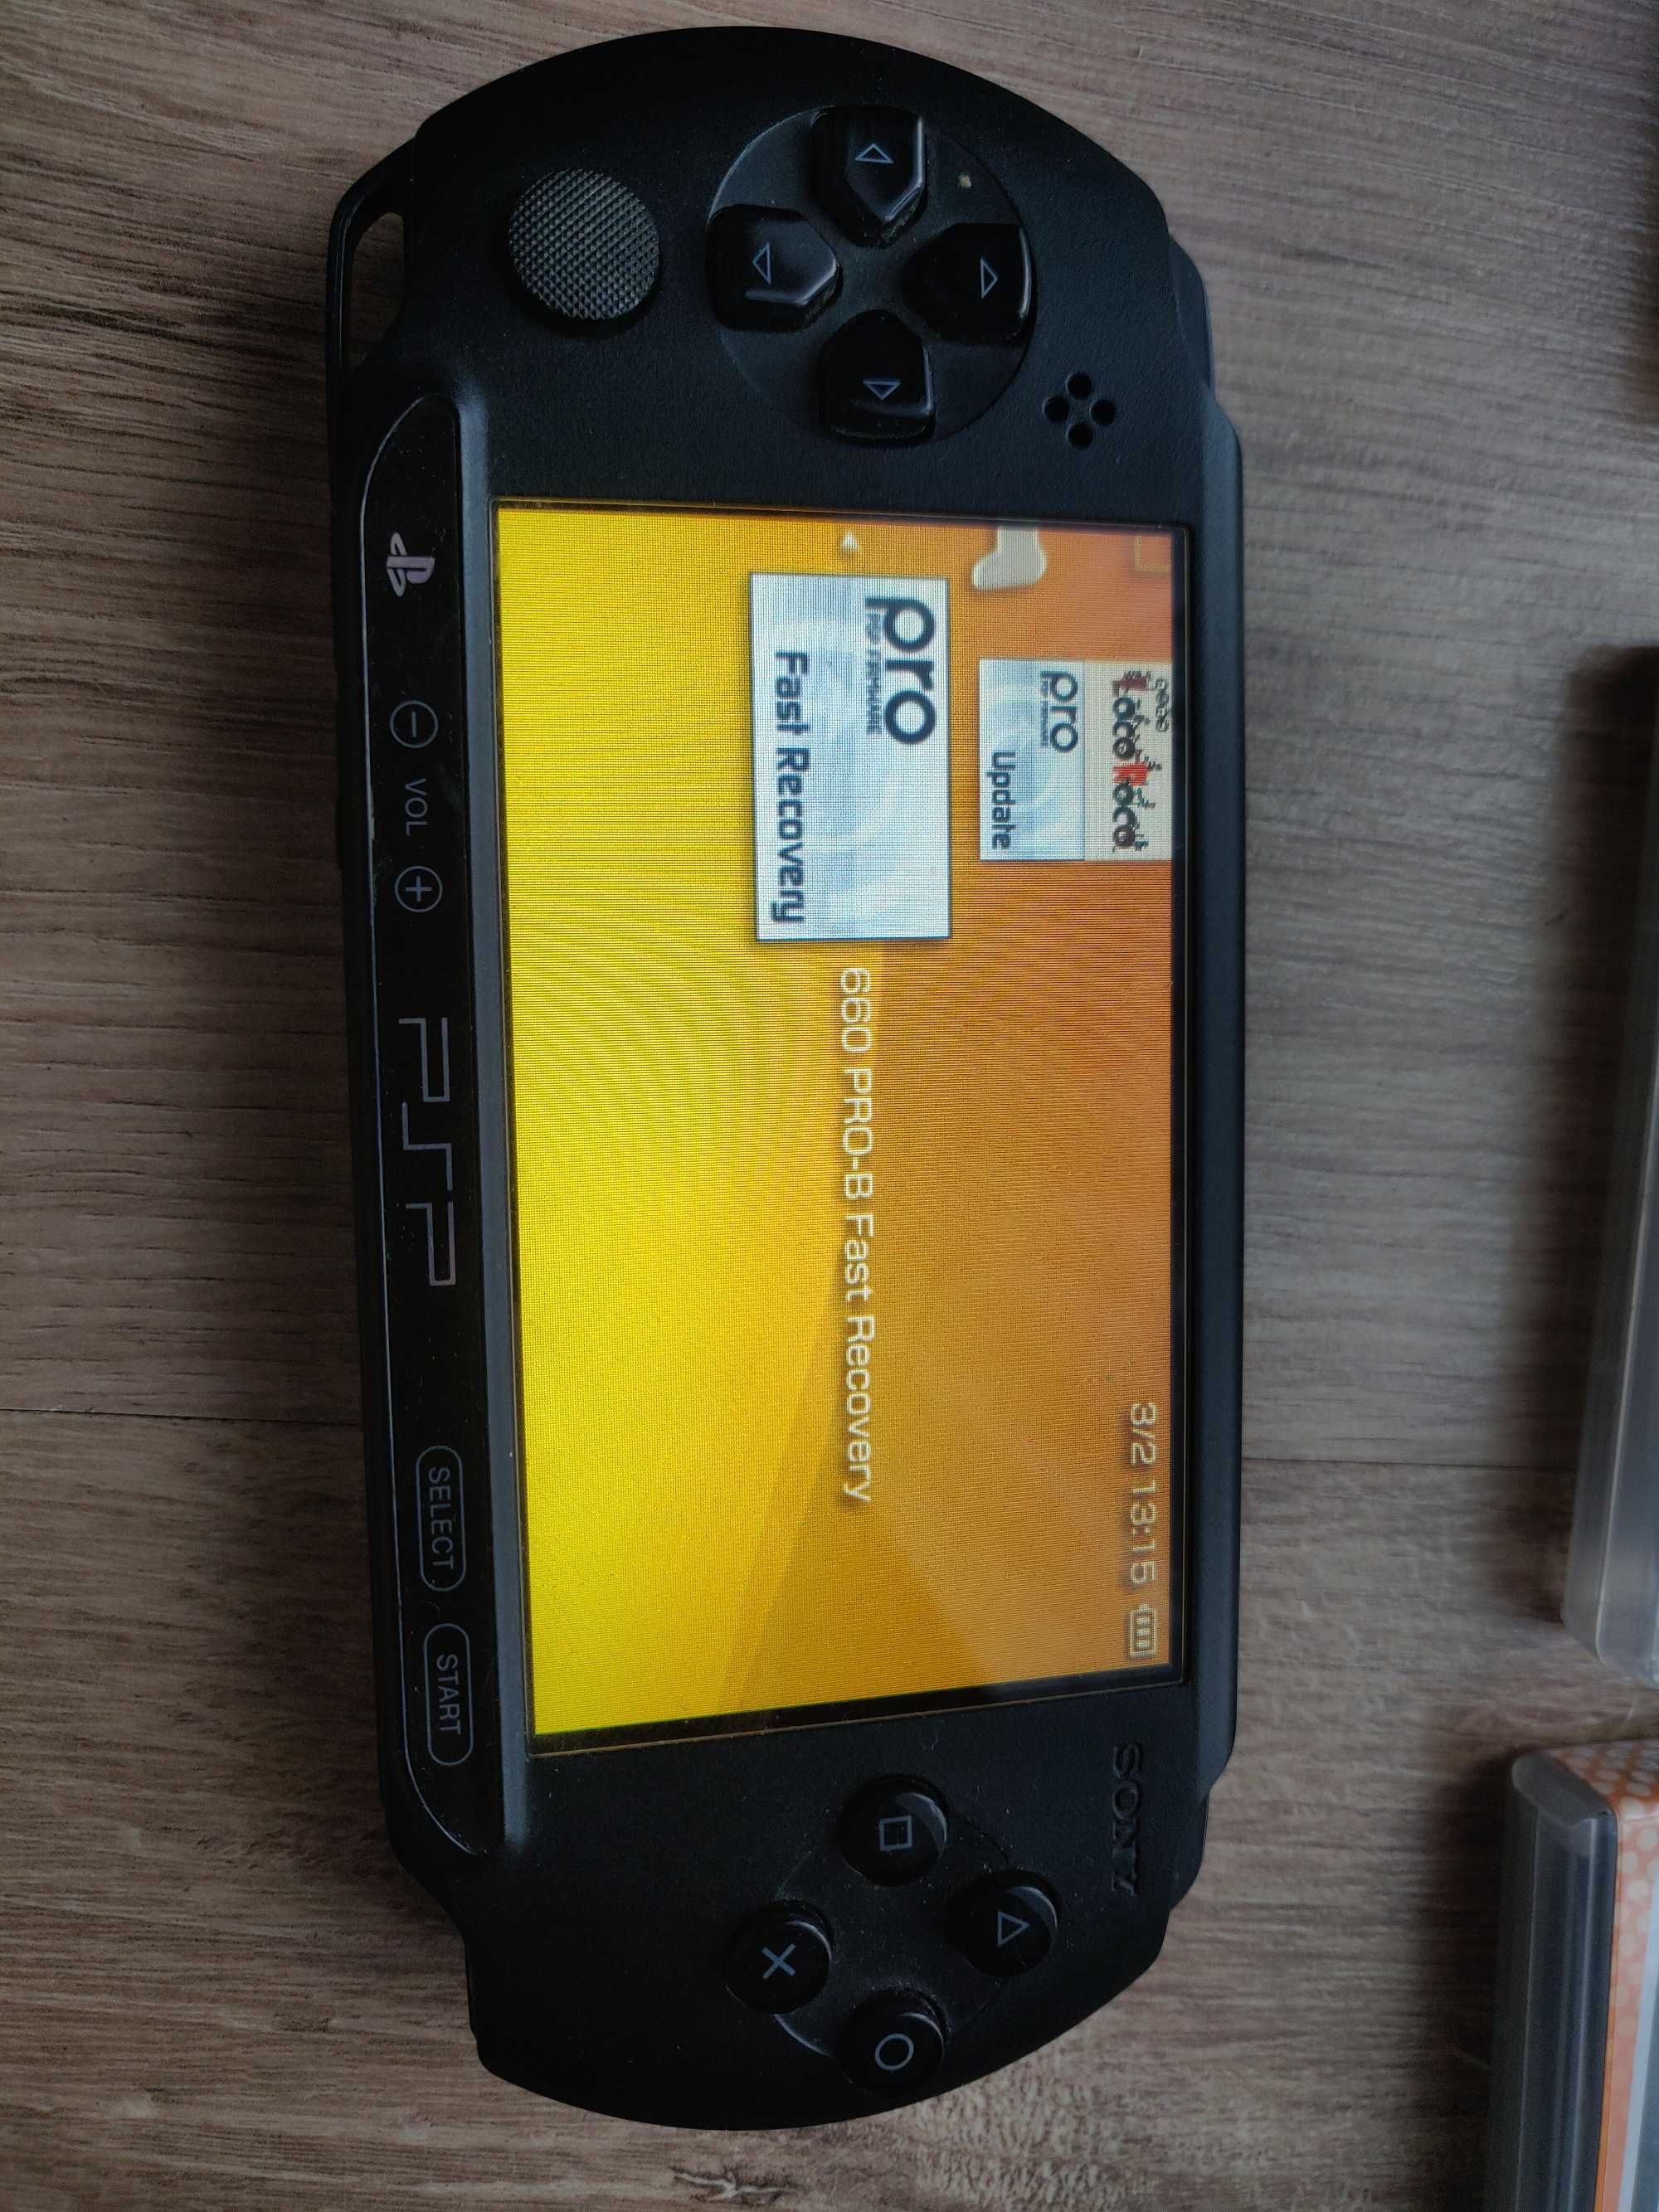 Konsola Sony PSP E1004 przerobiona + gry